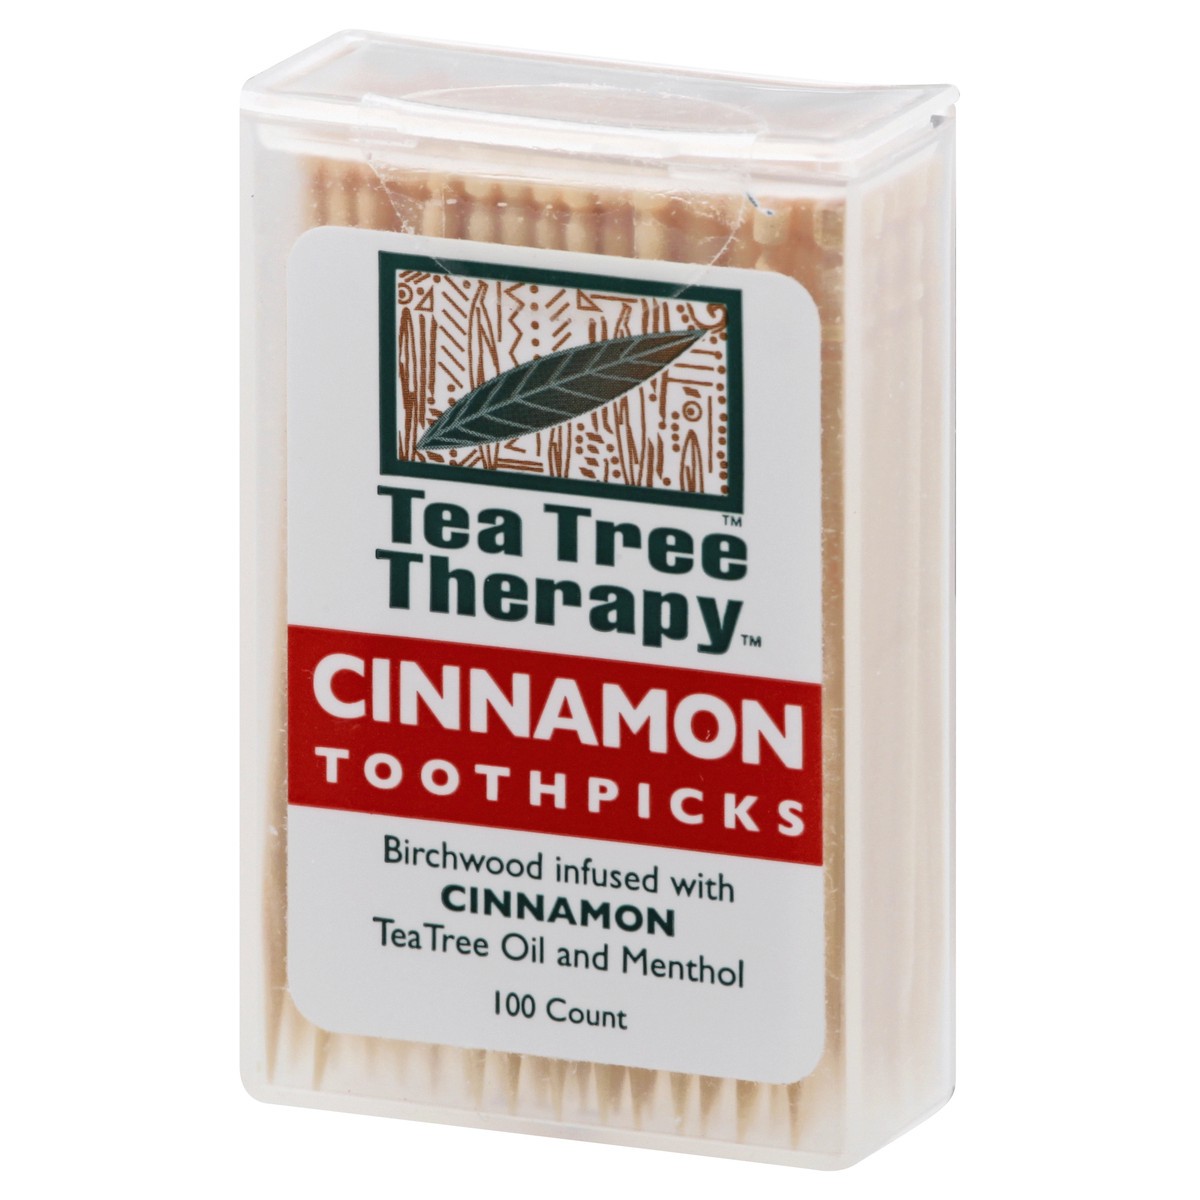 slide 7 of 11, Tea Tree Therapy Cinnamon Toothpicks, 100 ct